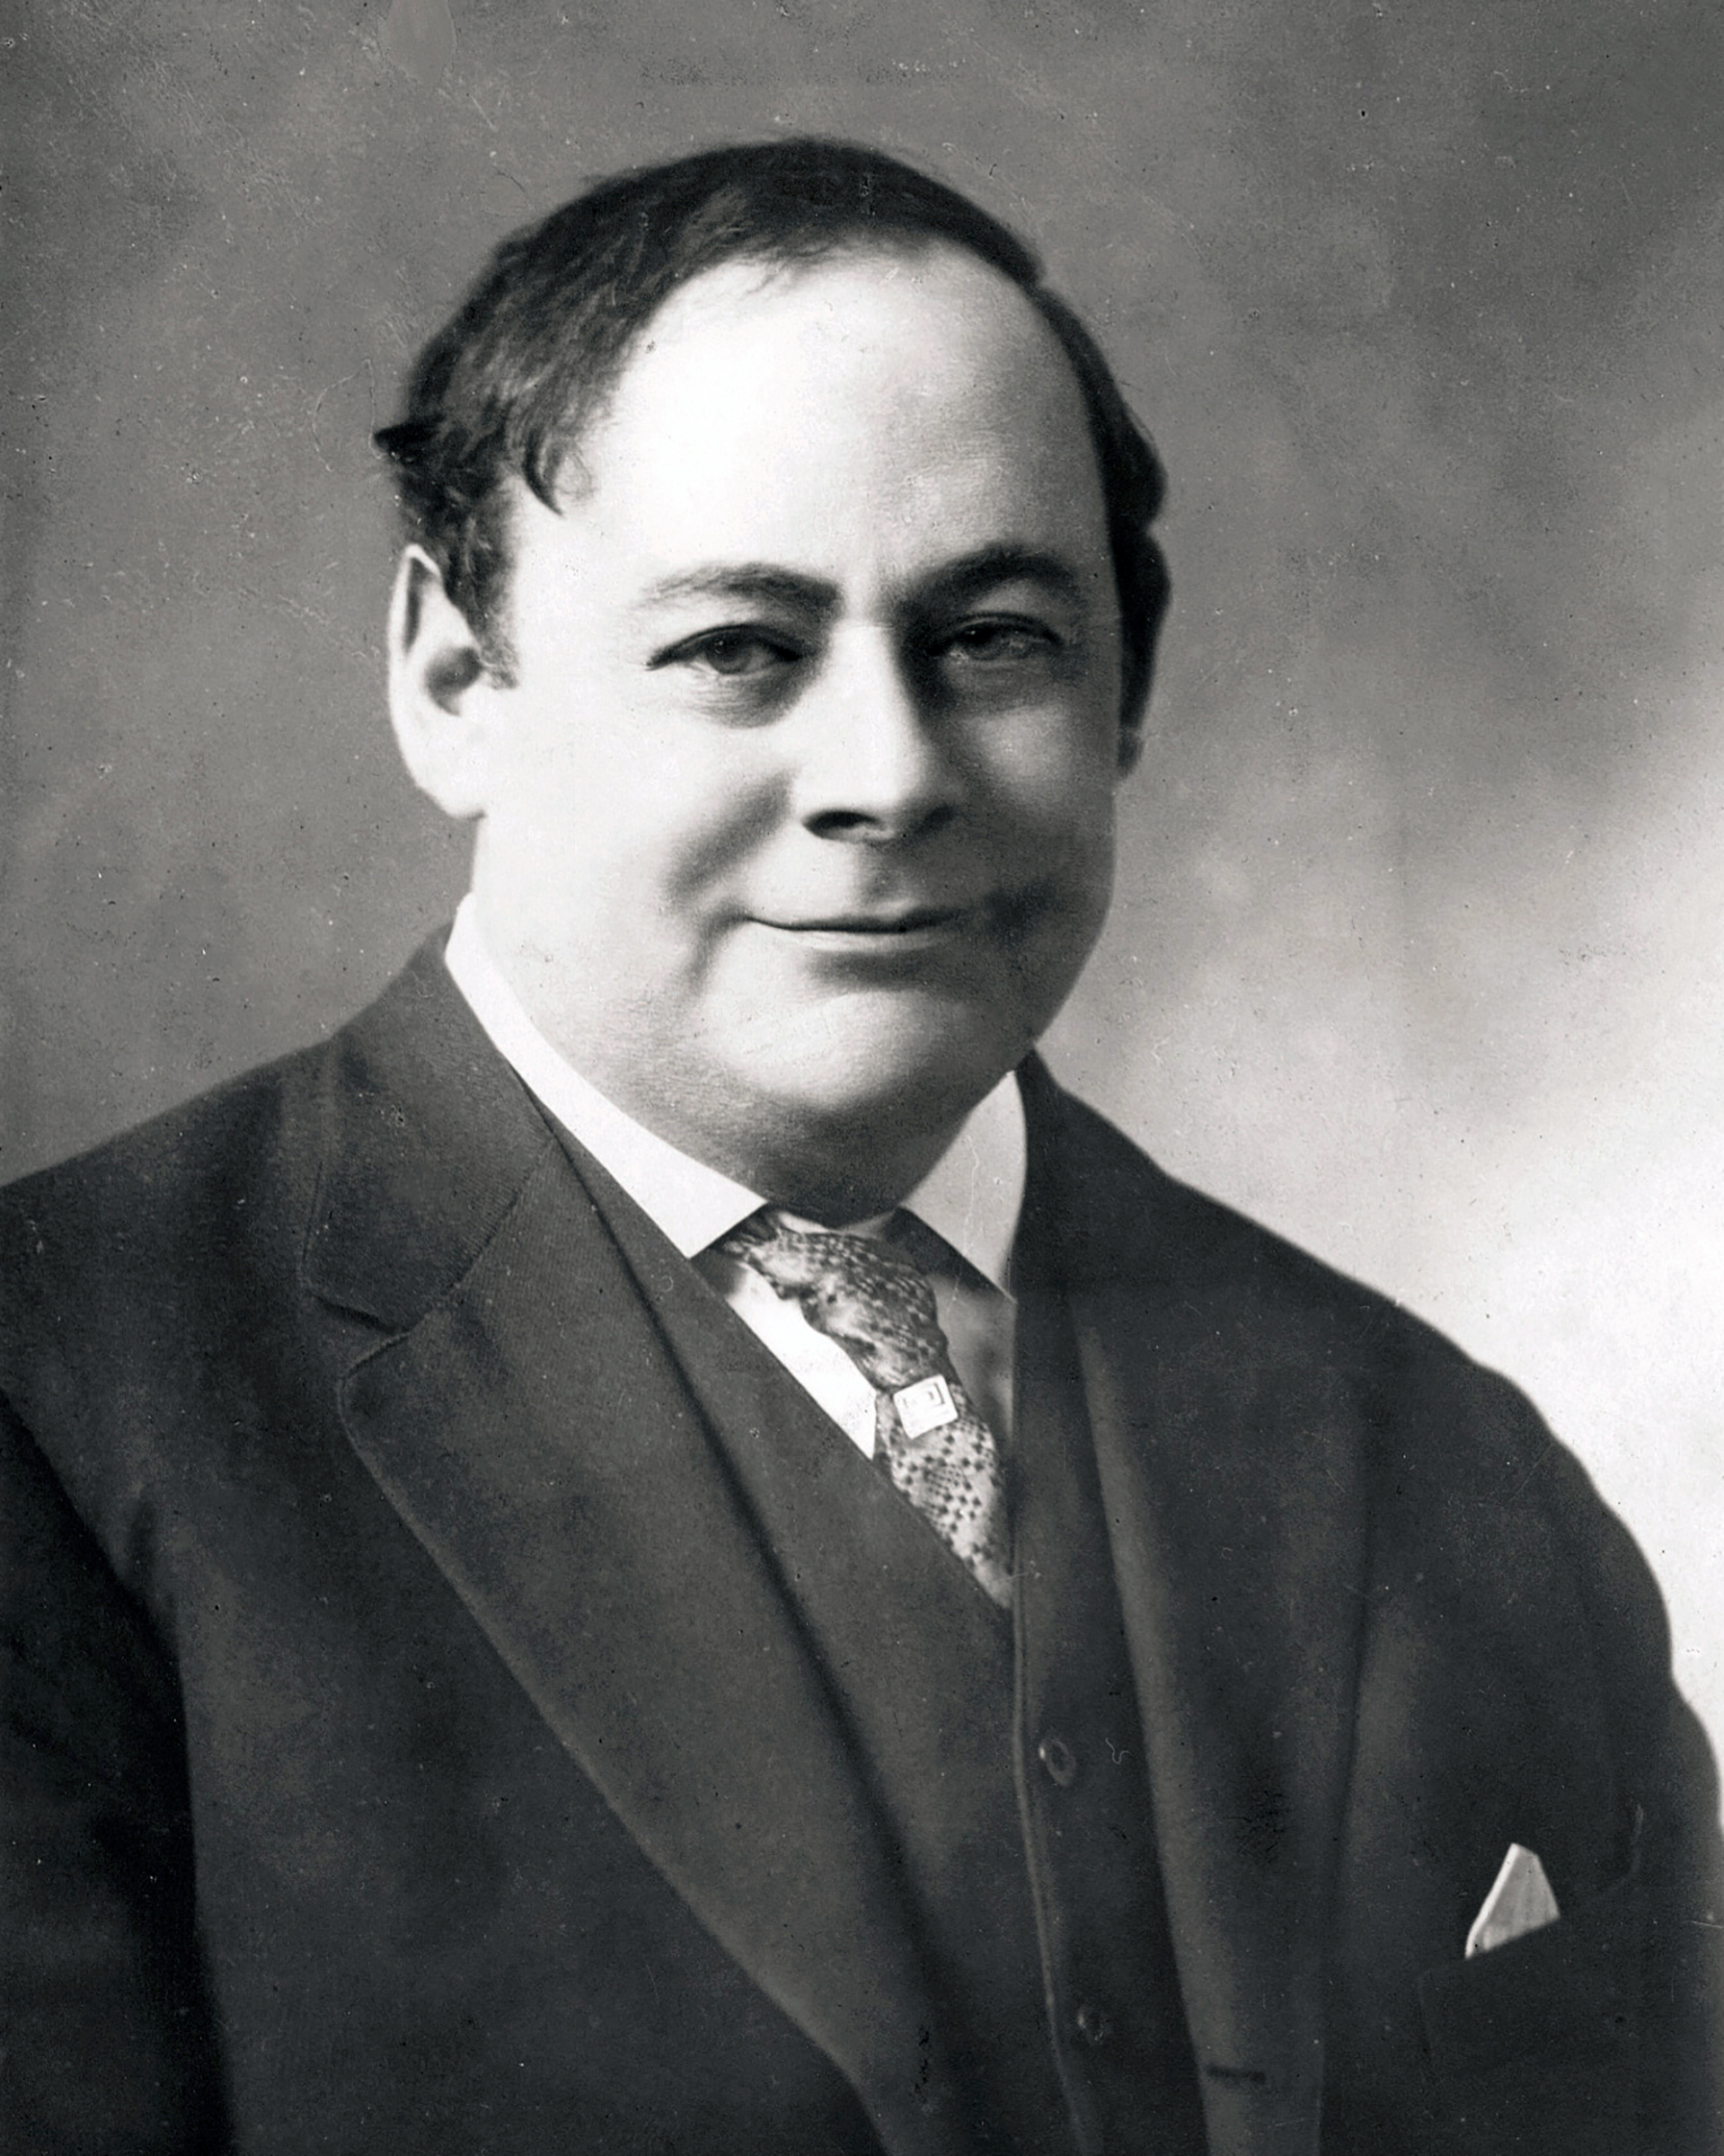 John Revelstoke Rathom, the editor of the Providence Journal from 1912-1923.